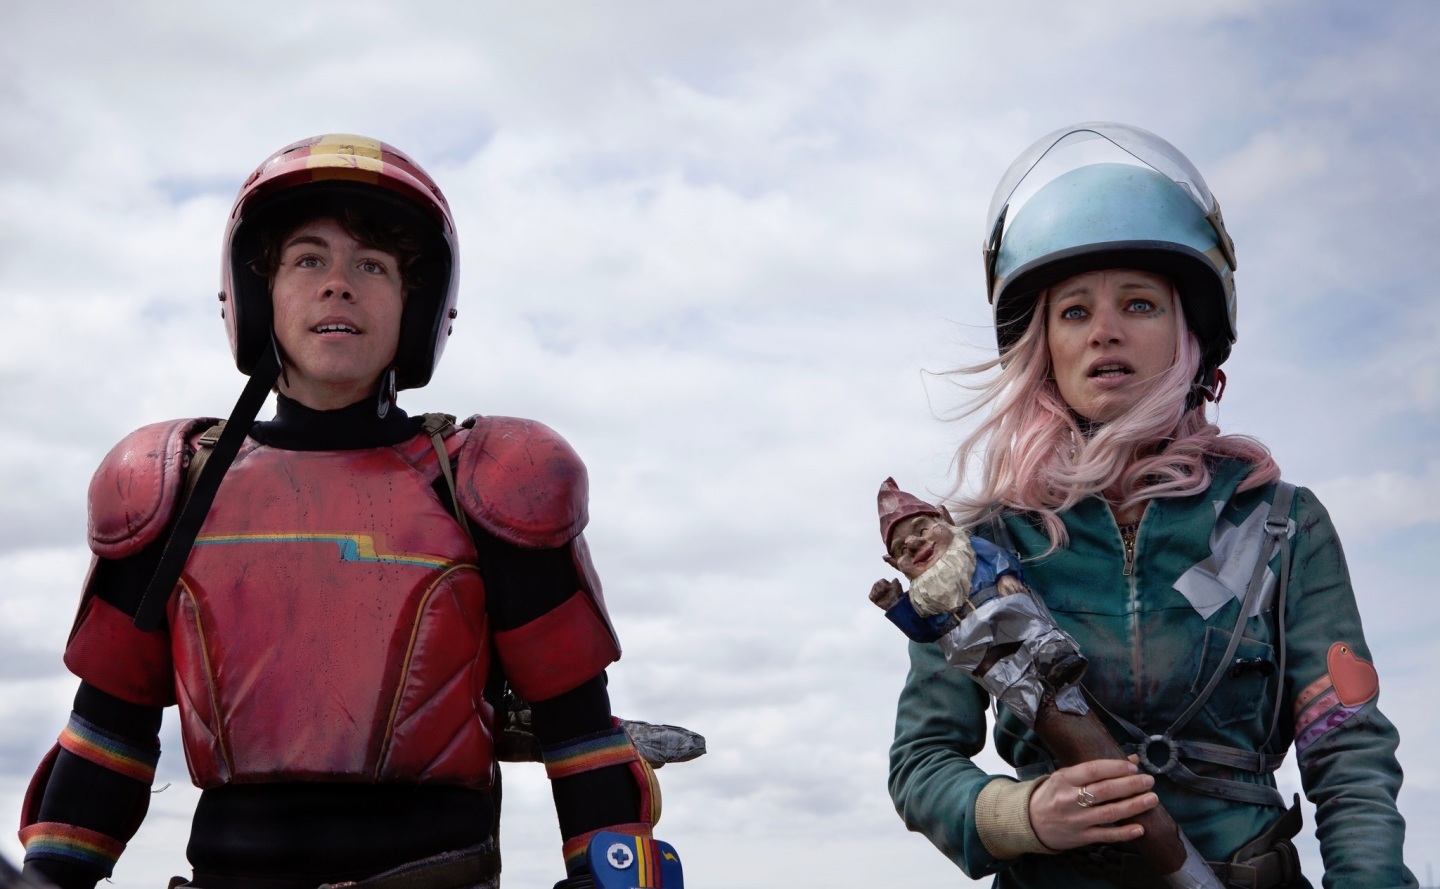 People 1440x889 Laurence Leboeuf women helmet motorbike helmet movies movie characters